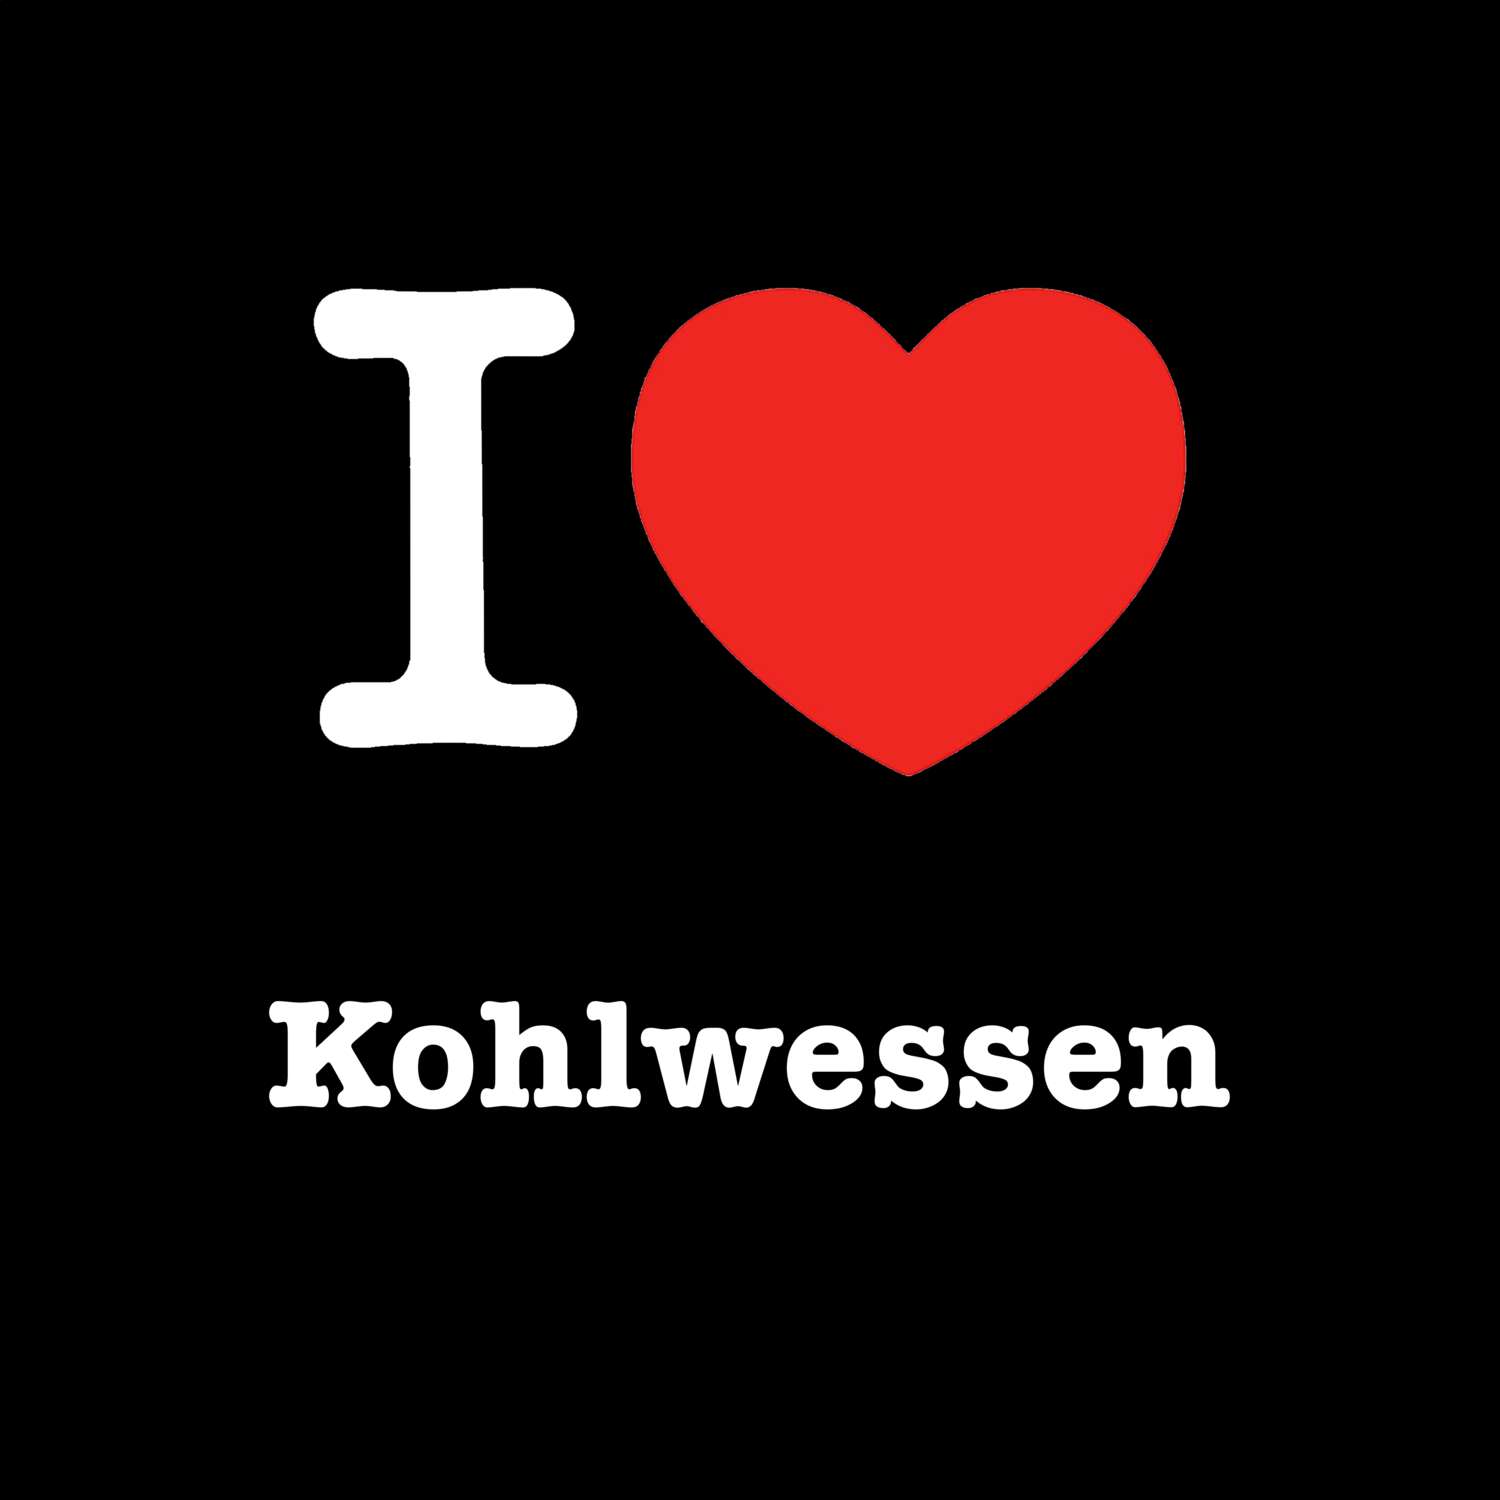 Kohlwessen T-Shirt »I love«